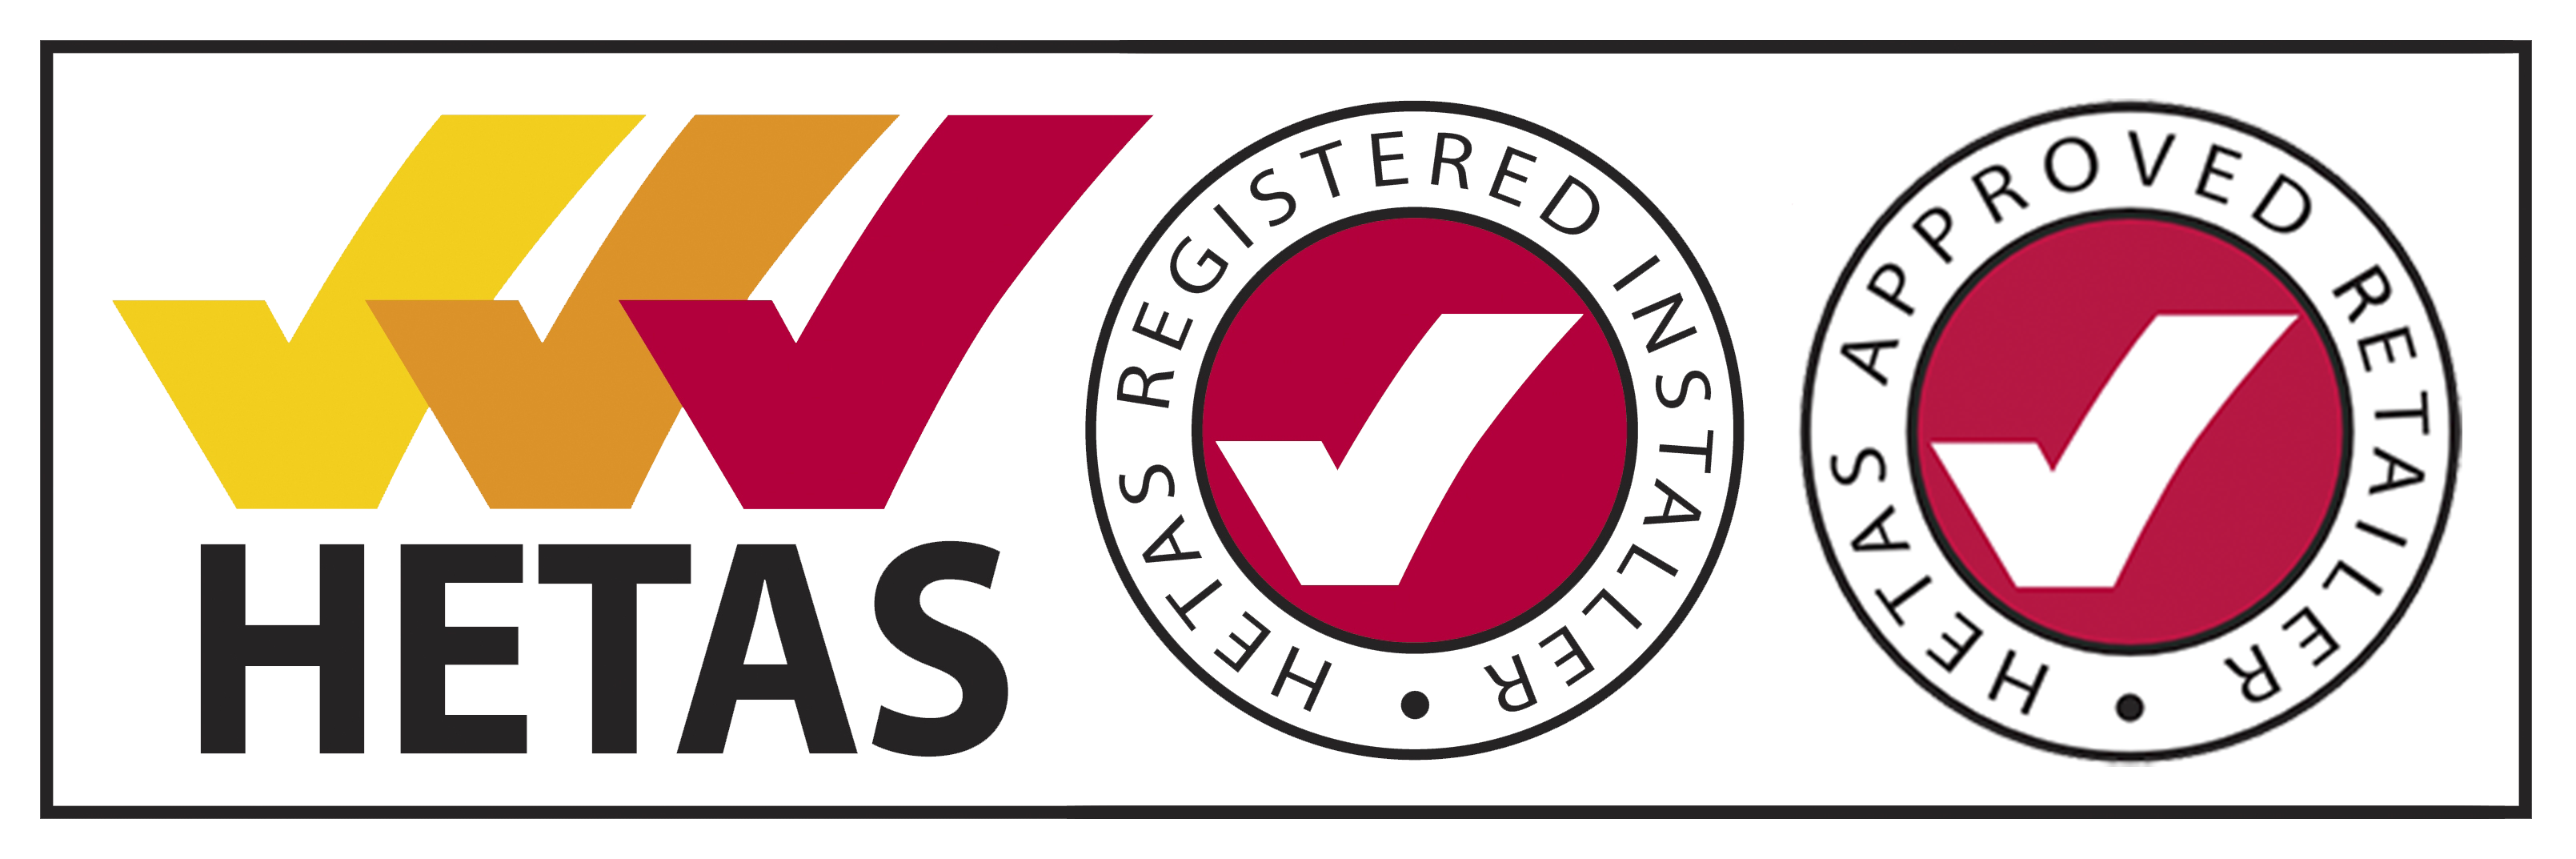 HETAS registered installer & approved retailer logo